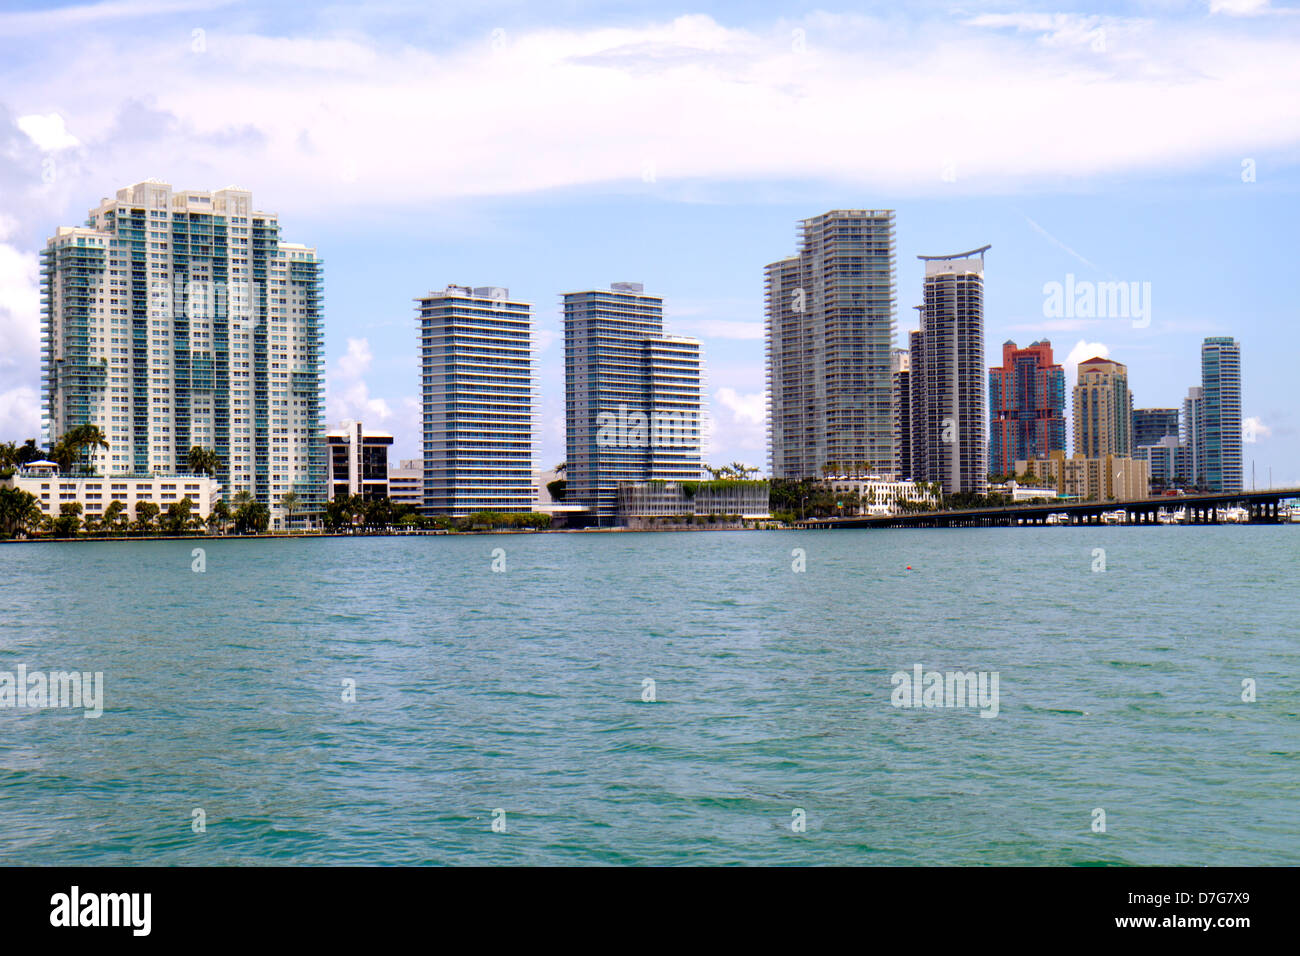 Miami Beach Florida,Biscayne Bay water,Intracoastal waterfront,high rise skyscraper skyscrapers building buildings condominium condominiums condo cond Stock Photo